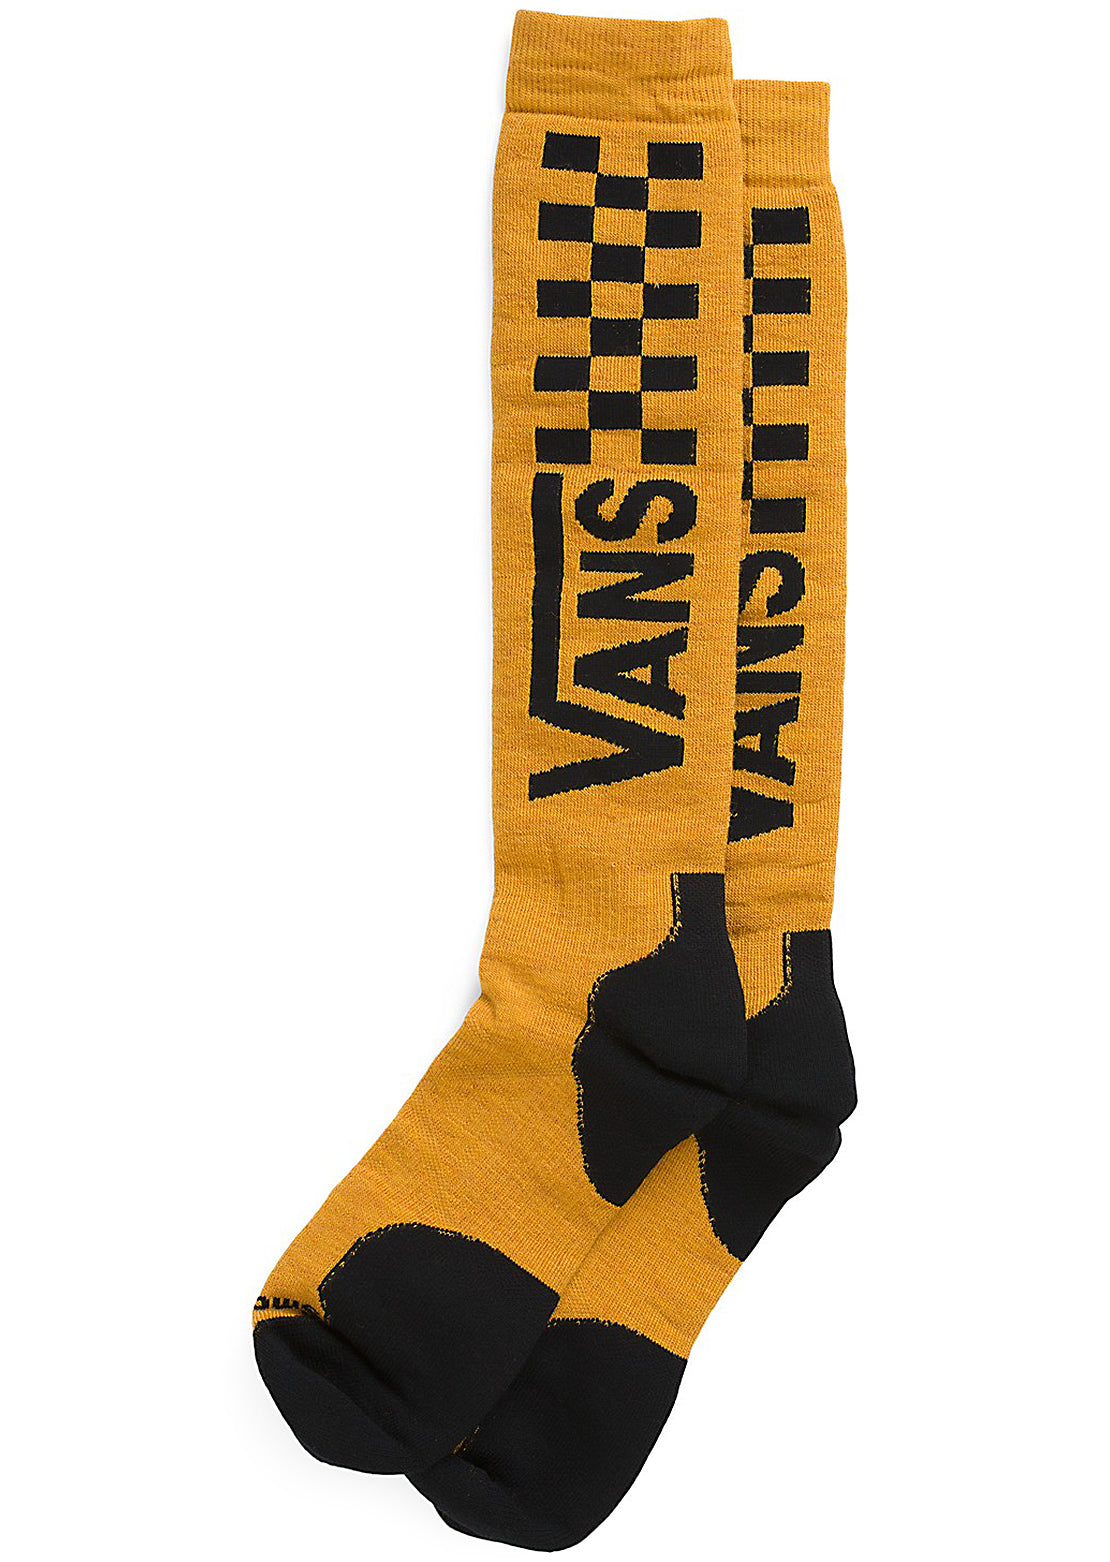 Vans Men&#39;s Smartwool Full Cushion Snow Socks Golden Yellow